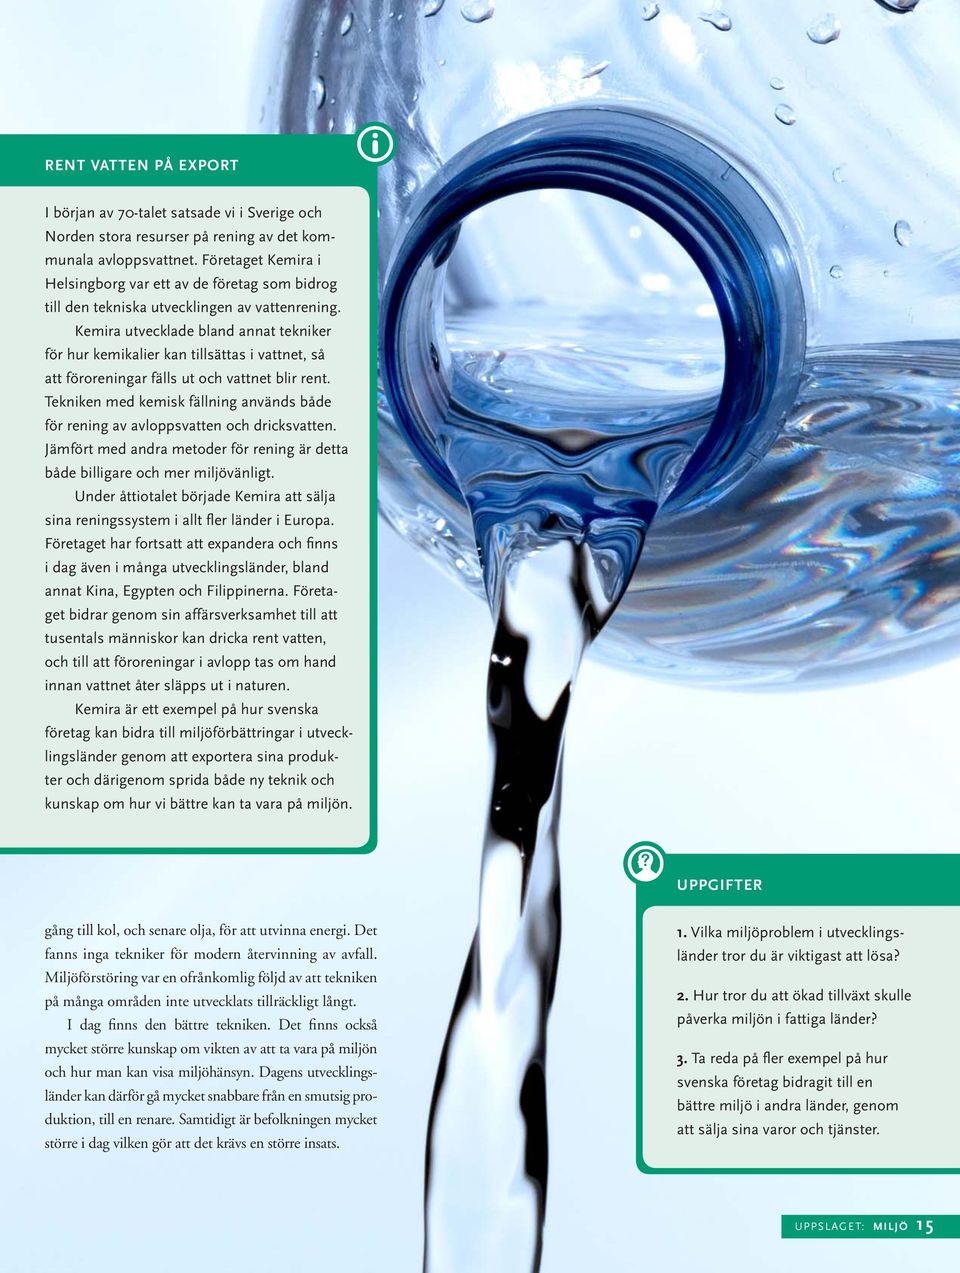 Kemira utvecklade bland annat tekniker för hur kemikalier kan tillsättas i vattnet, så att föroreningar fälls ut och vattnet blir rent.